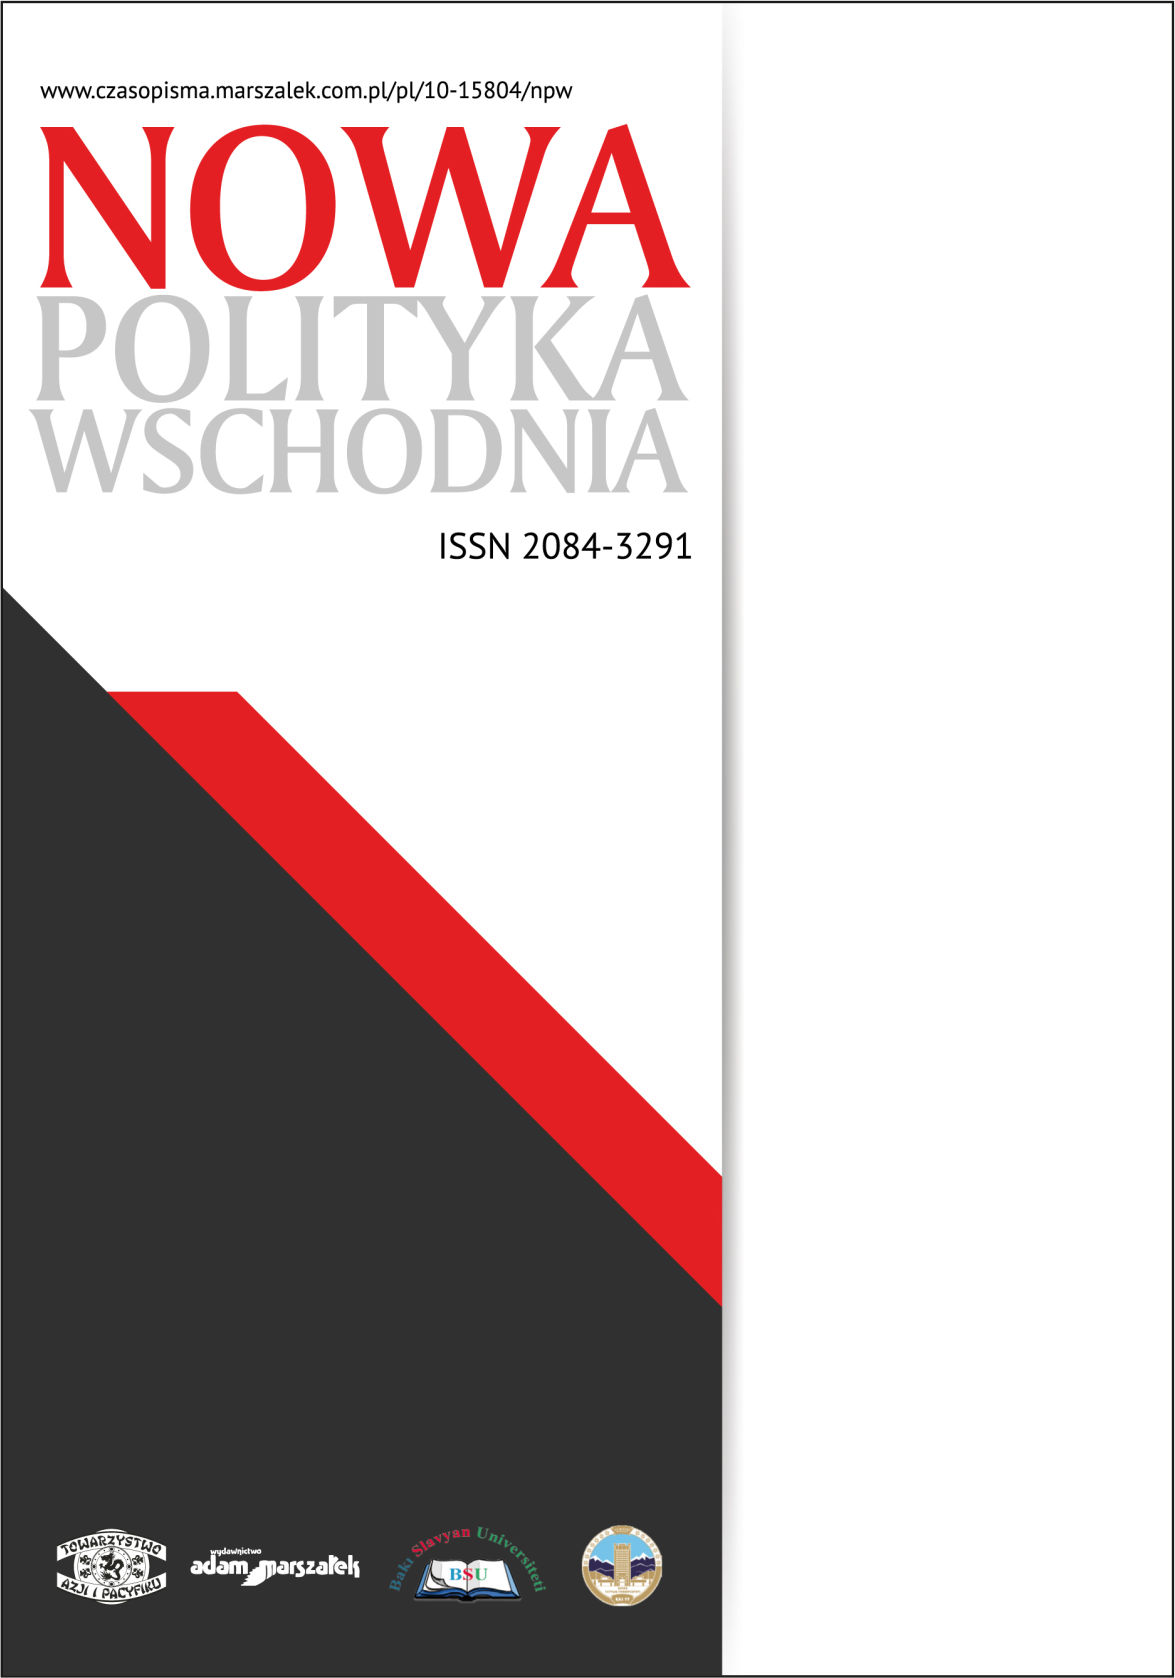 Górnośląsko-Zagłębiowska Metropolia jako pionier w kształtowaniu polityki metropolitalnej w Polsce